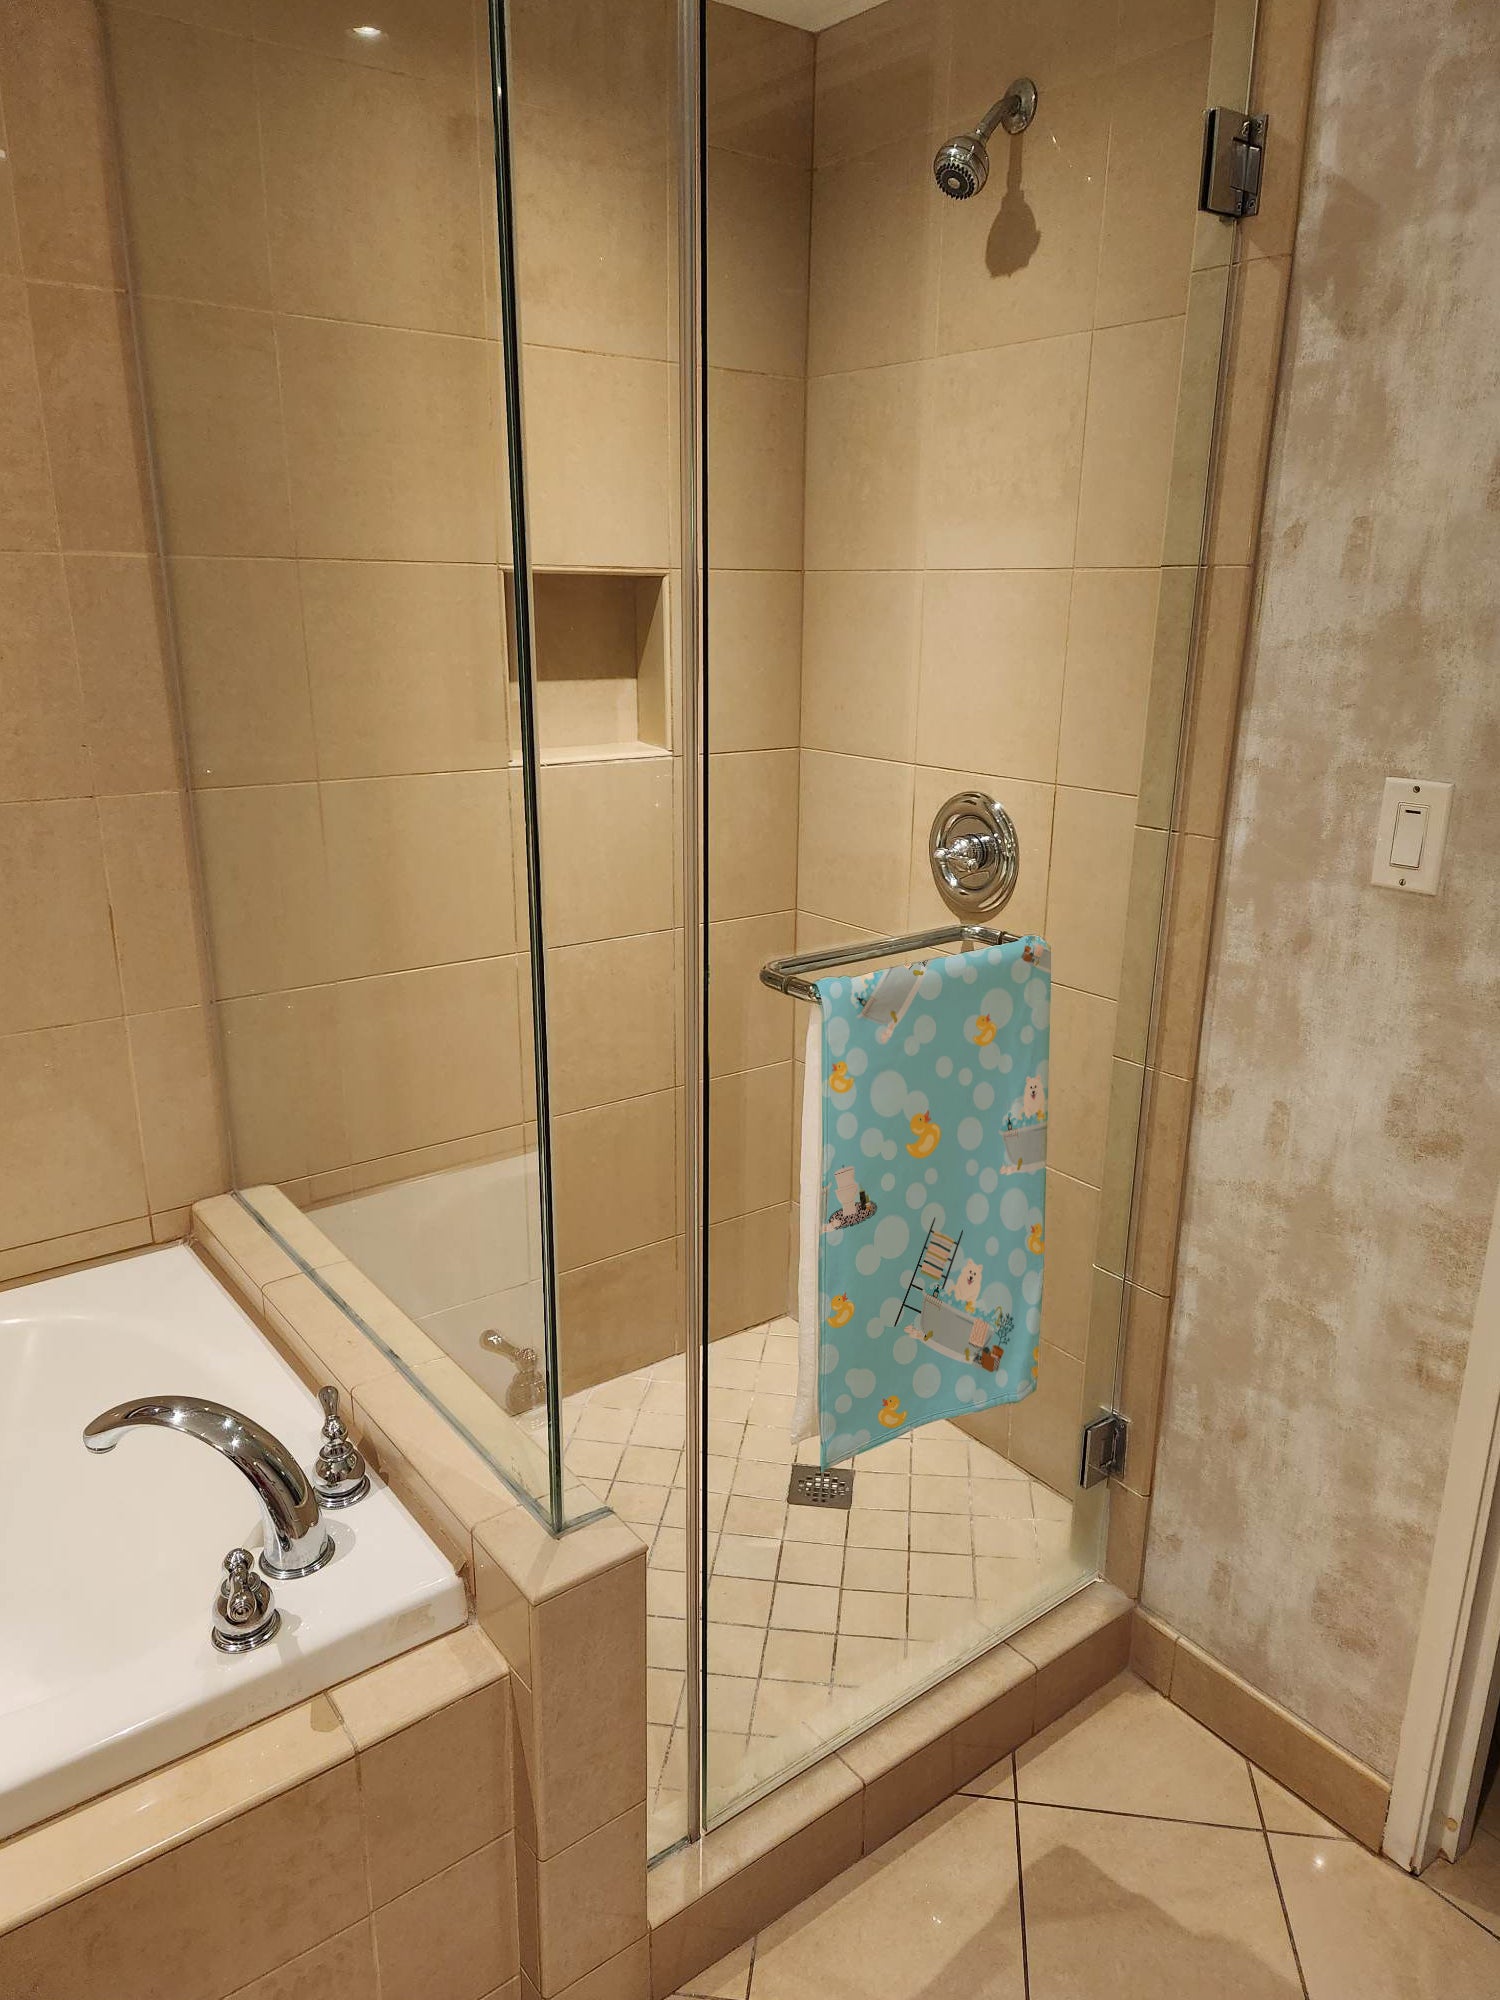 Samoyed in Bathtub Bath Towel Large